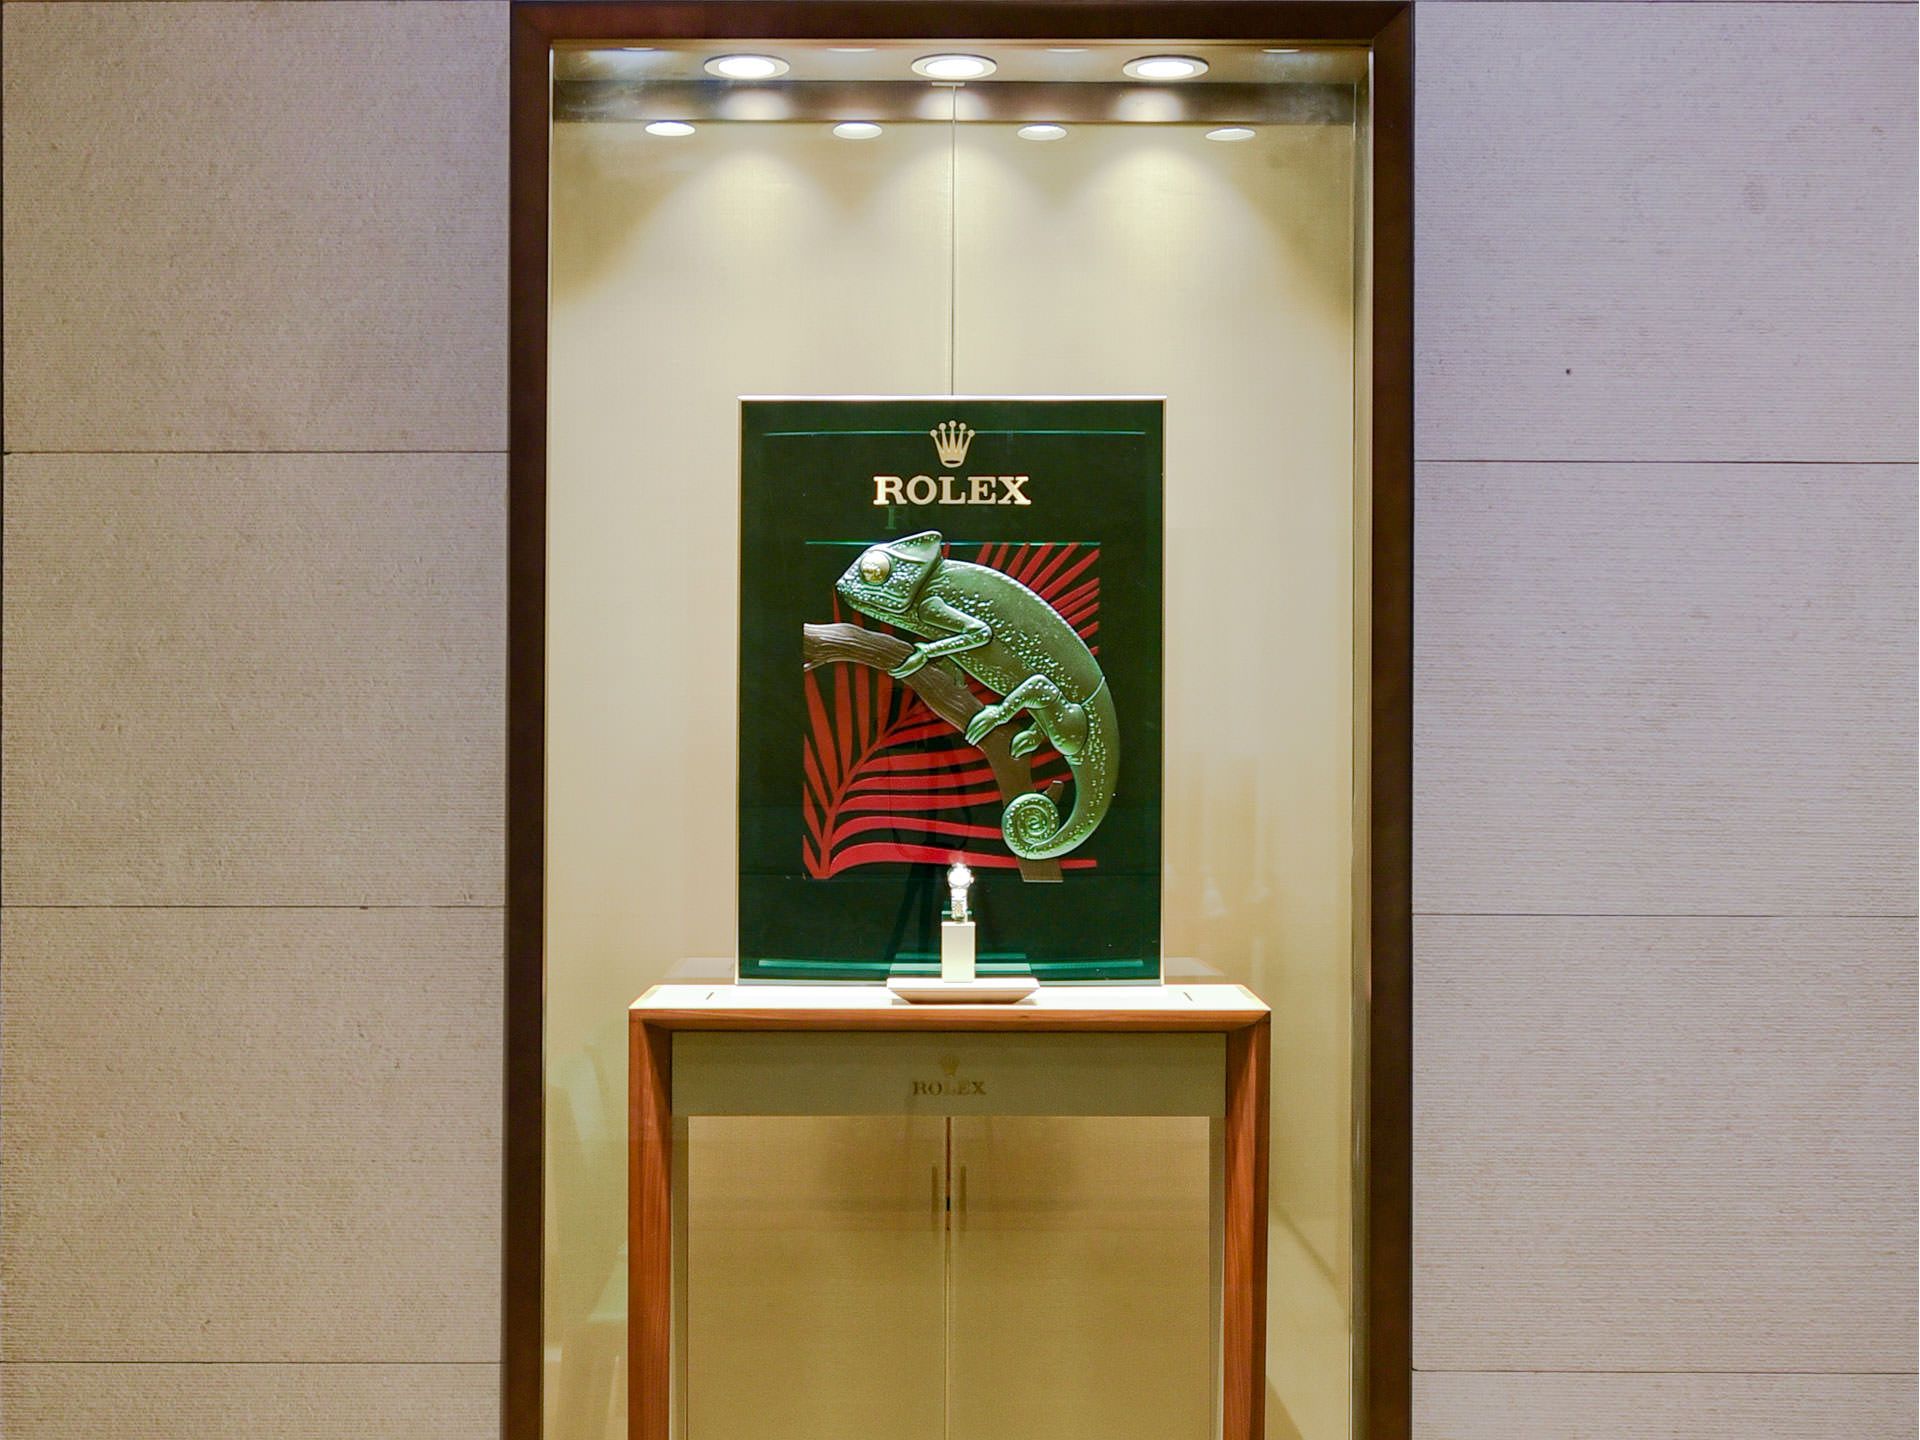 Rolex Boutique - Ethos Limited, Bangalore, Karnataka